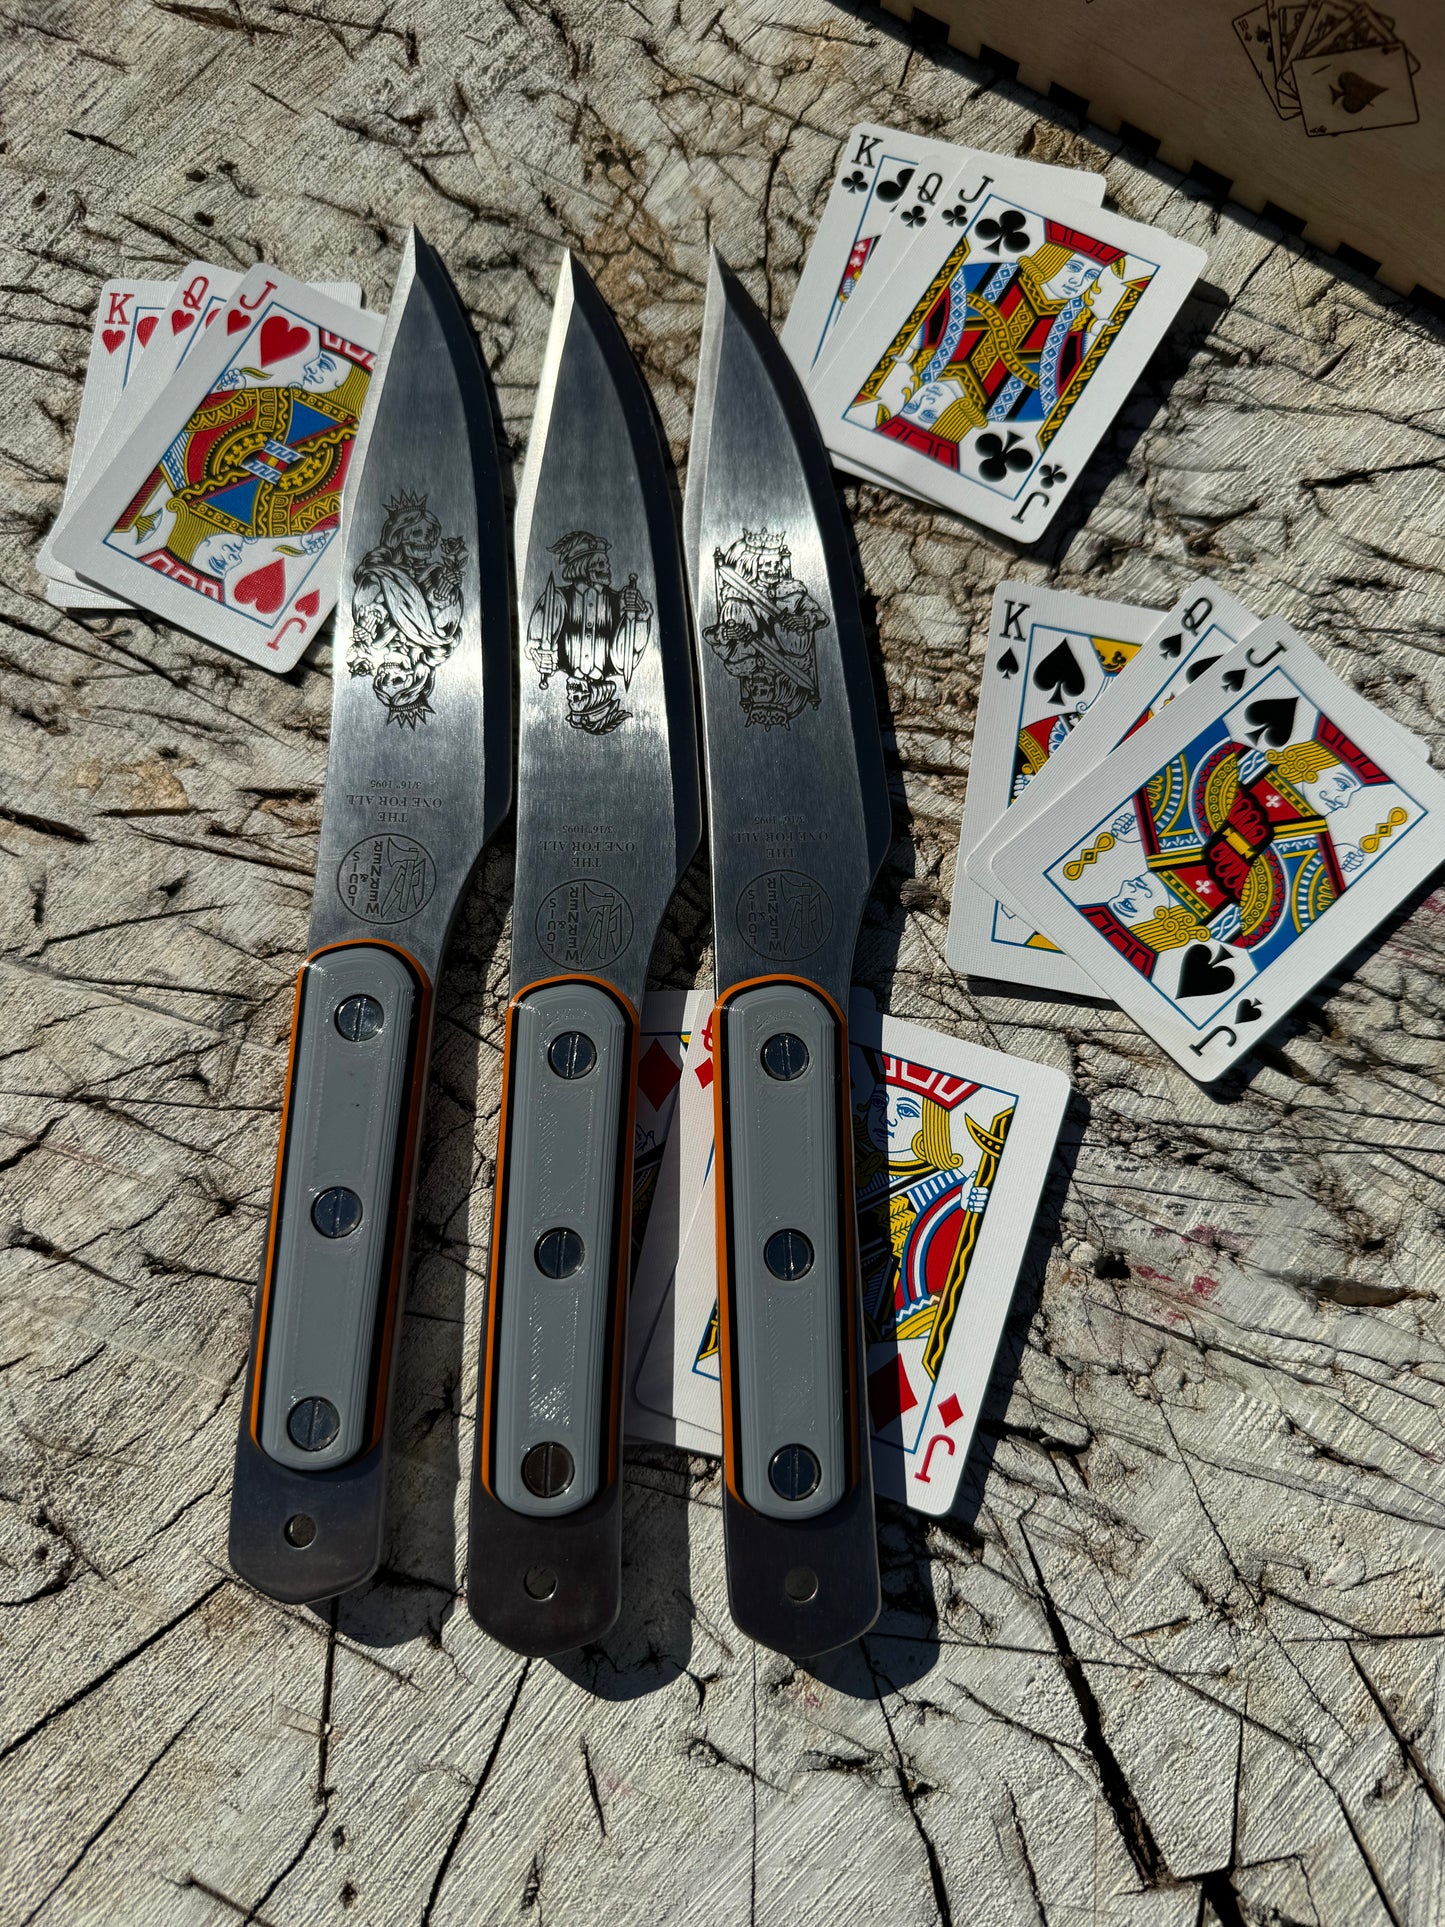 Custom "Card Killer" set of One For All's